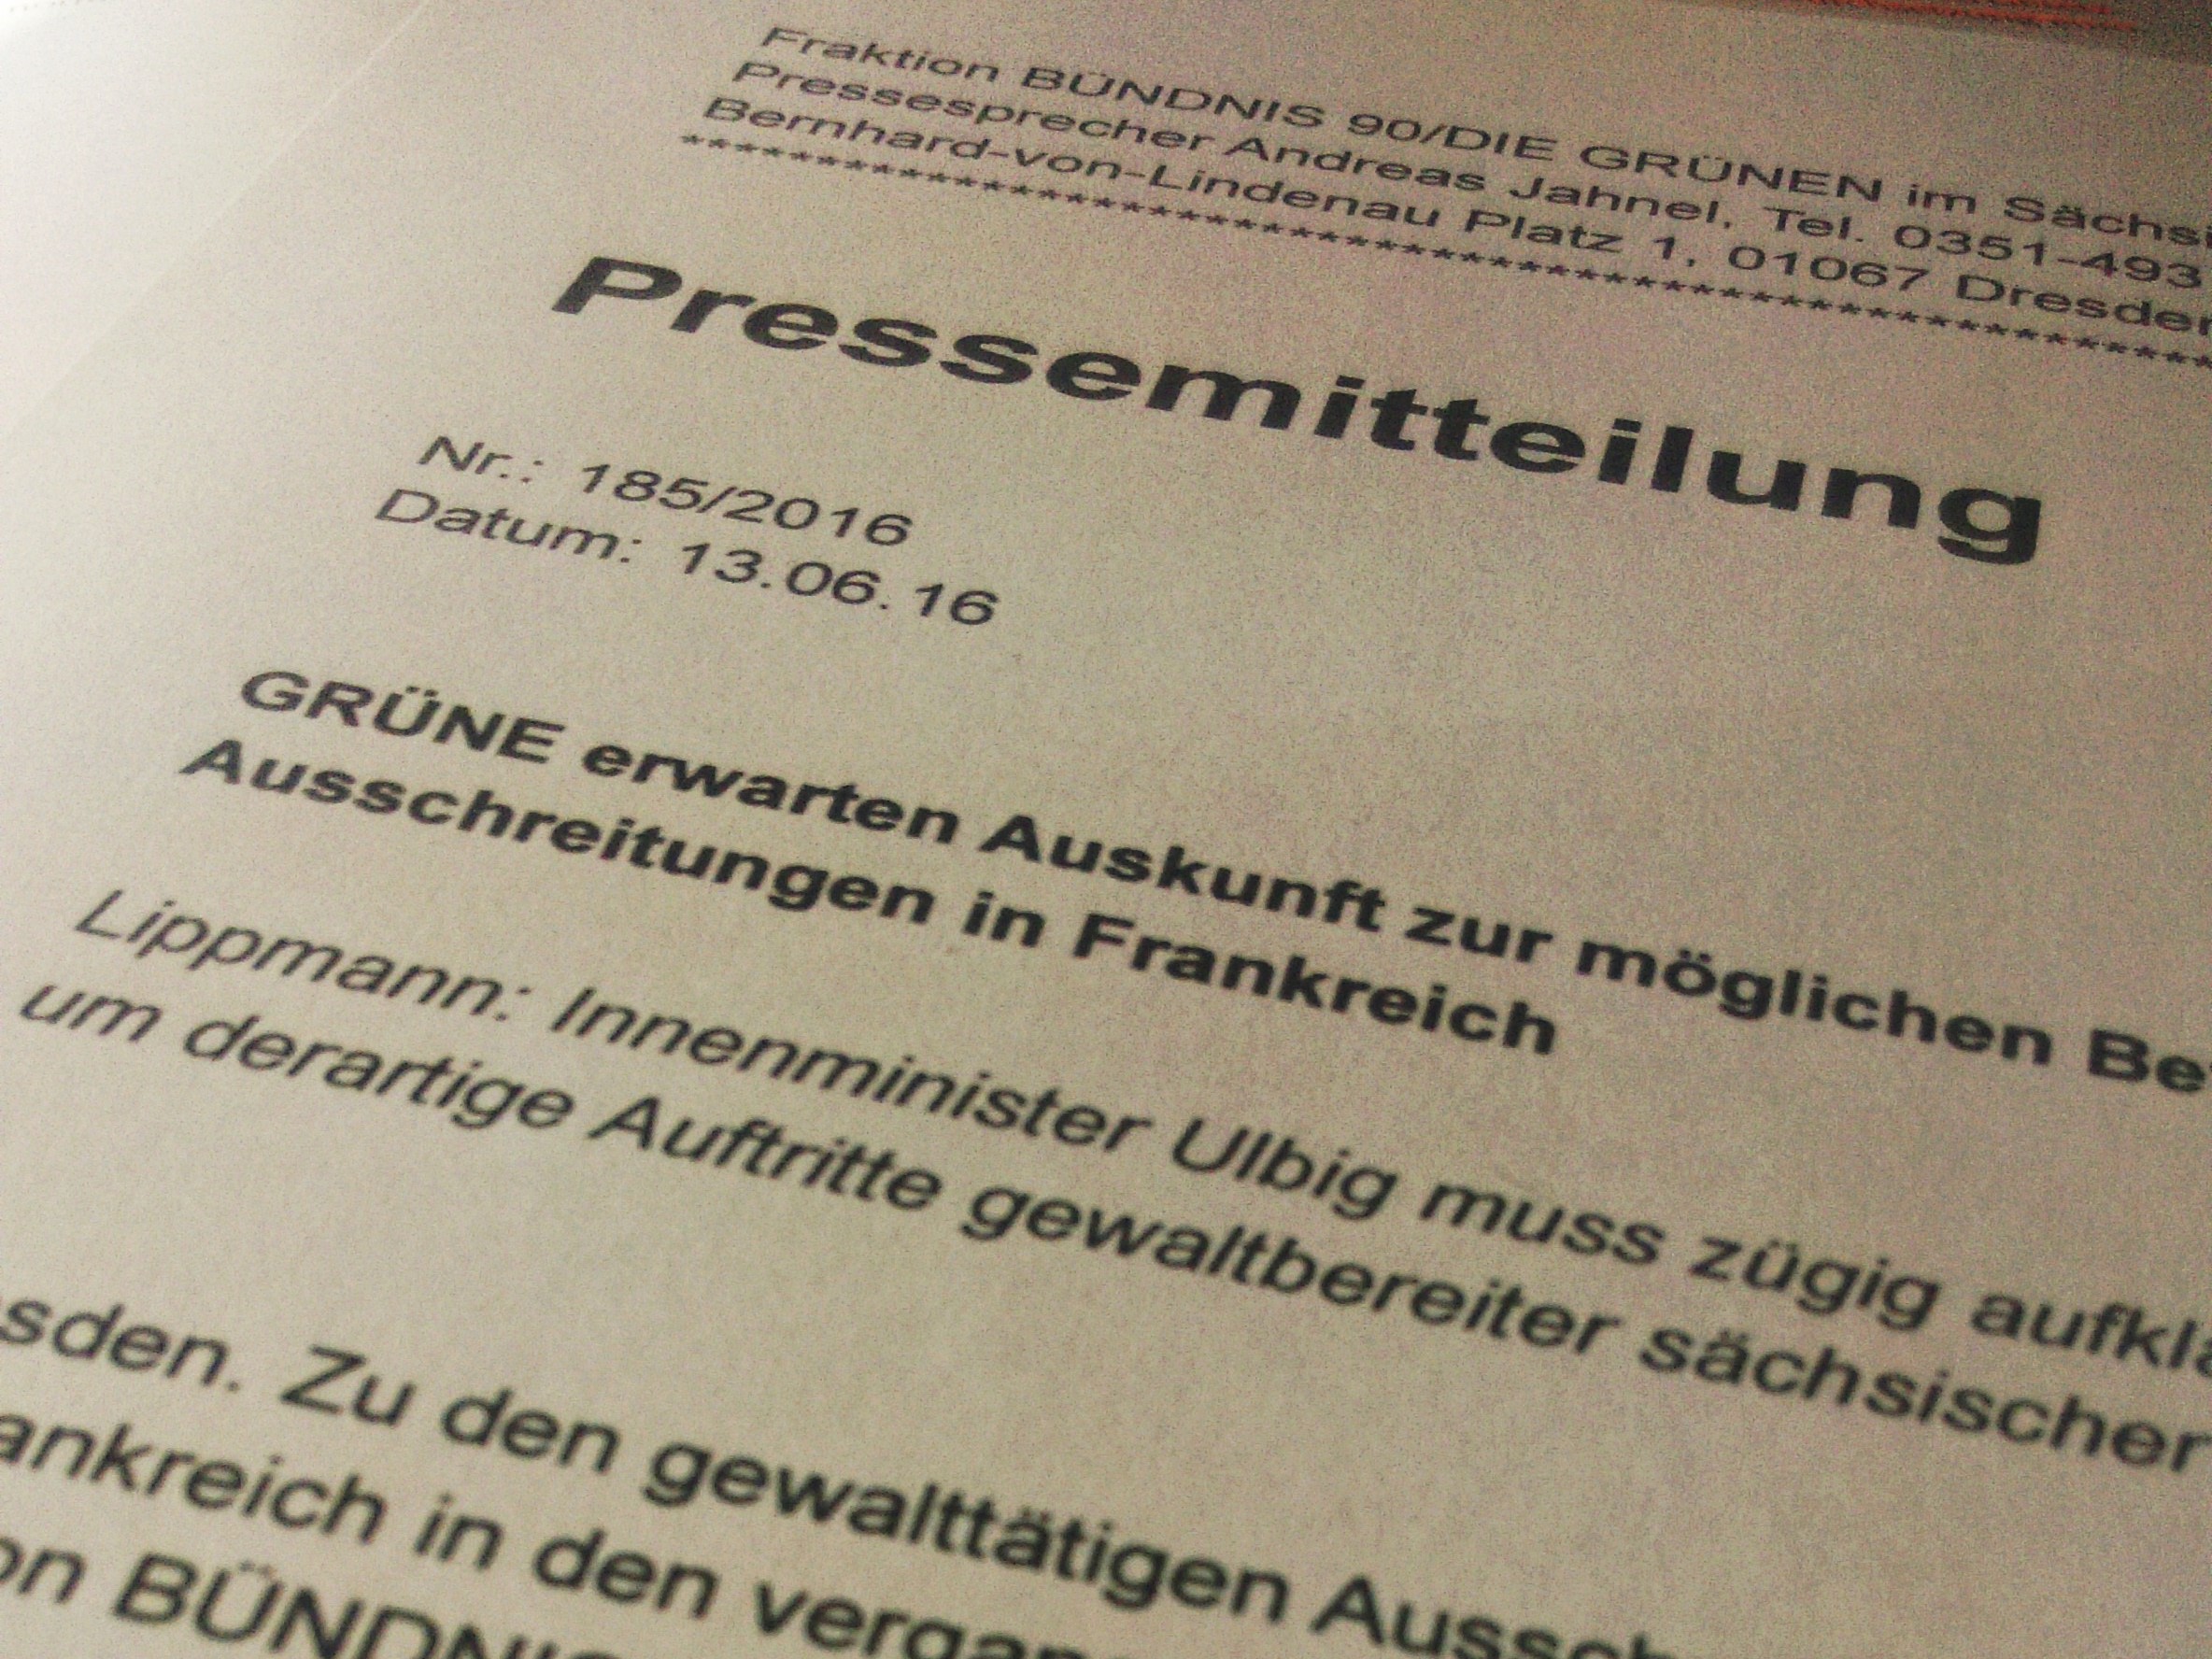 Abschlussbericht der Personalkommission ist ein Report des Versagens der CDU-geführten Staatsregierung